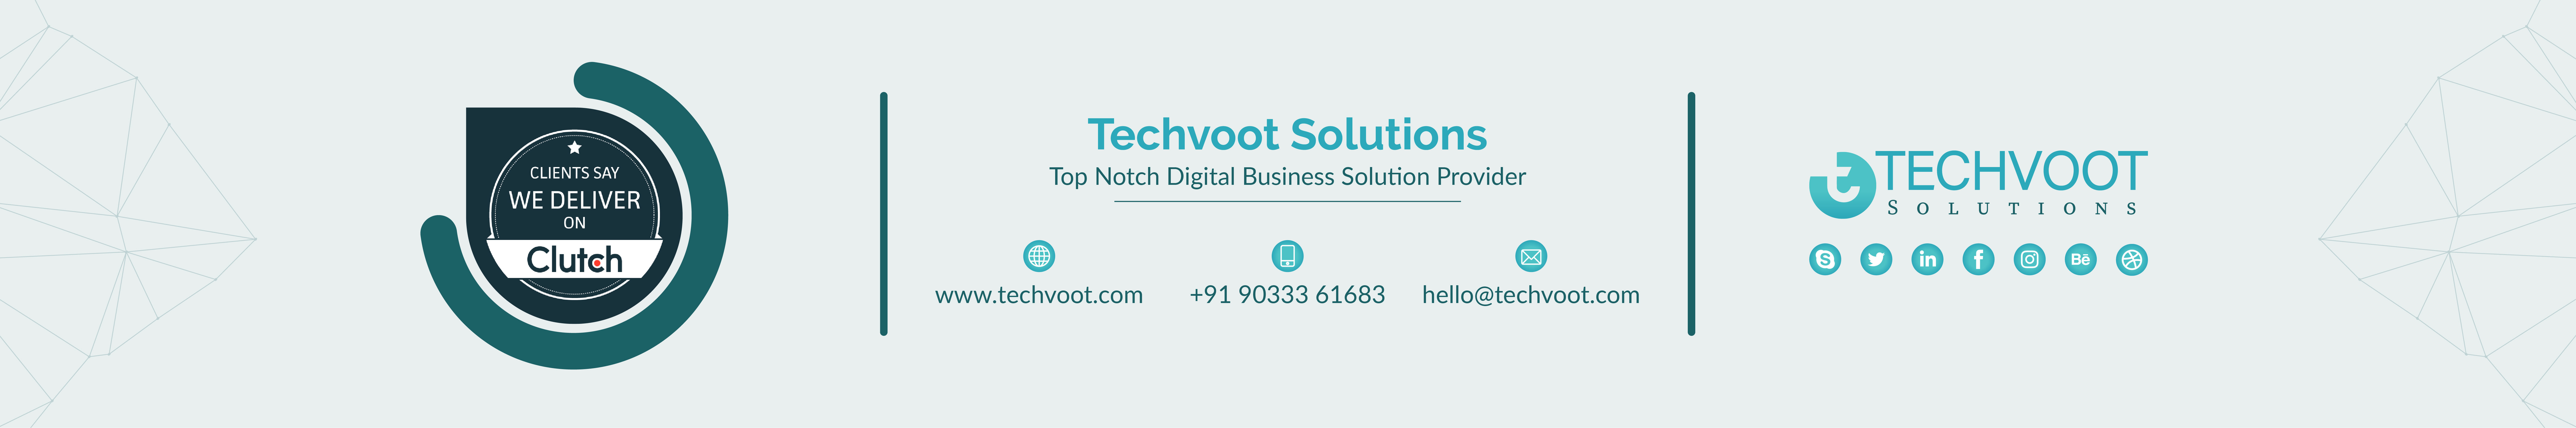 Techvoot Solutions profil başlığı